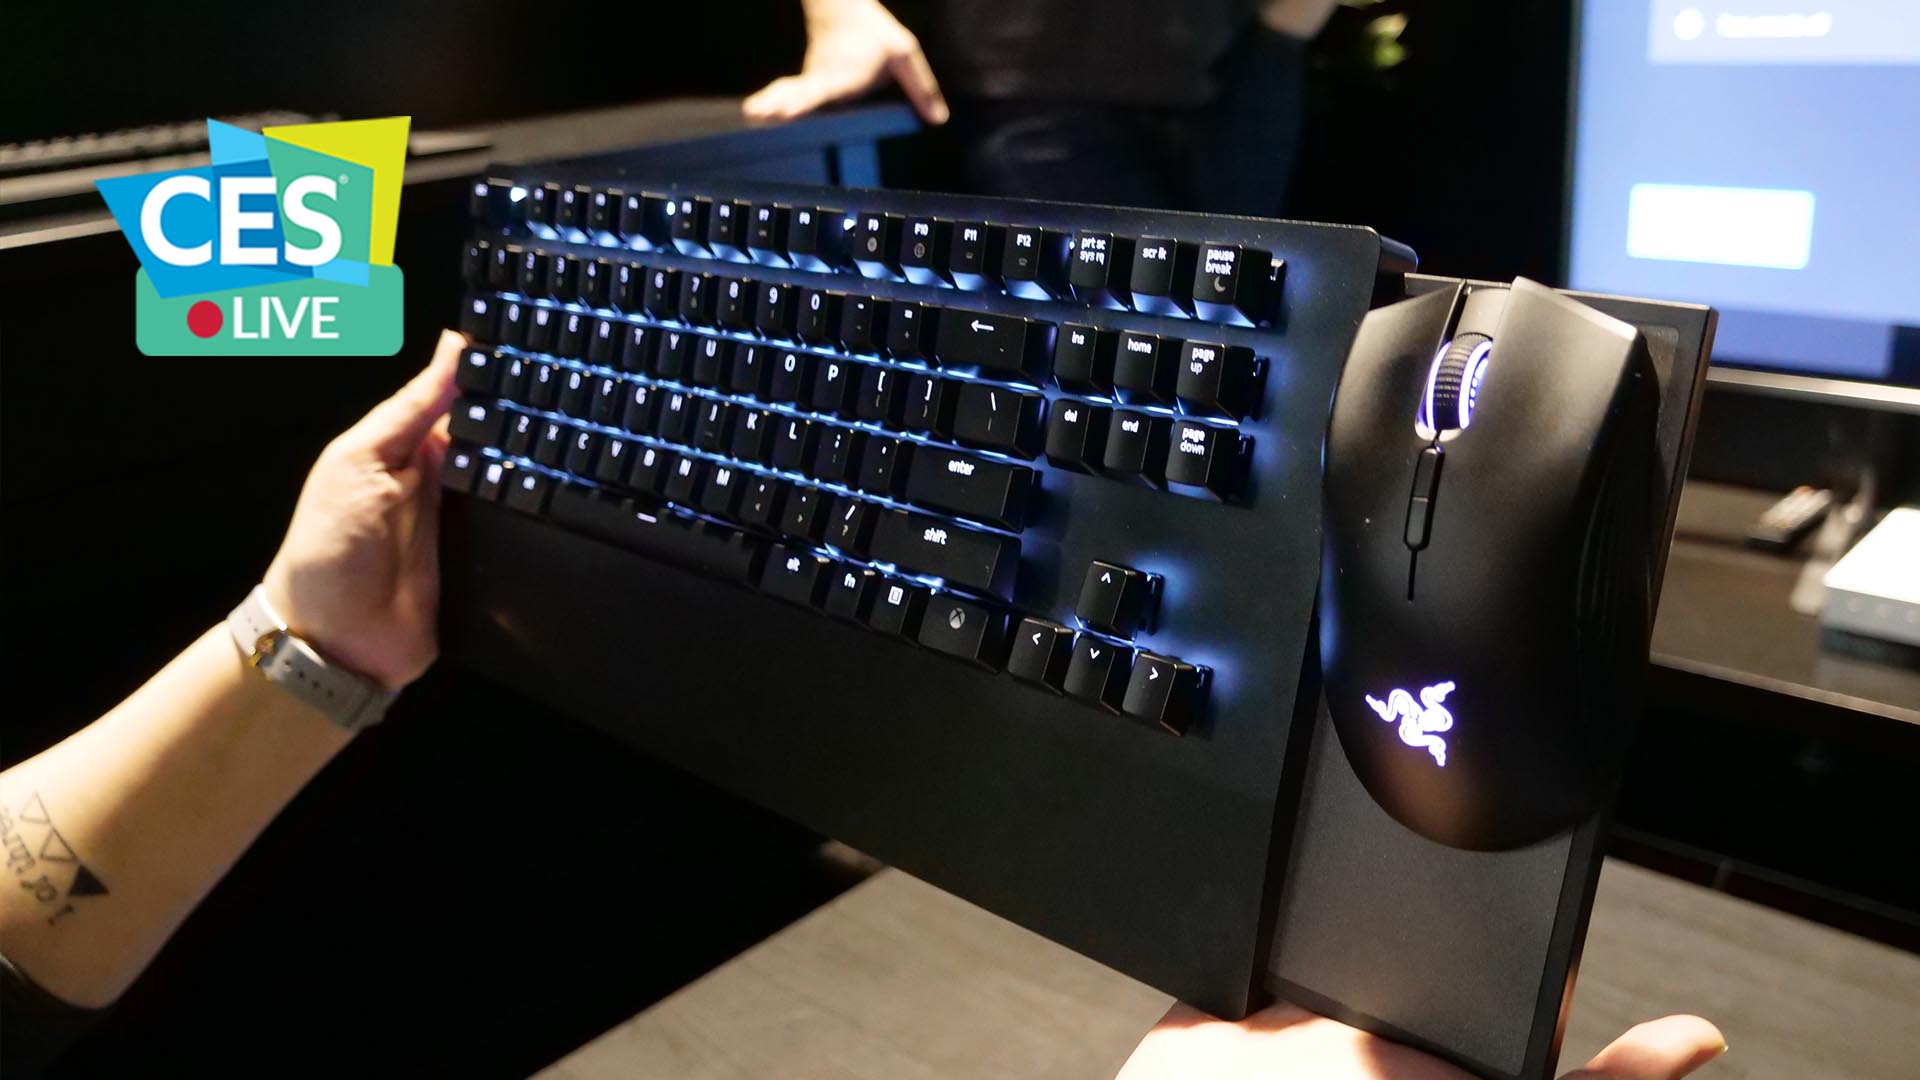 Abbiamo provato Razer Turret: mouse e tastiera per la vostra Xbox One | CES 2019 thumbnail